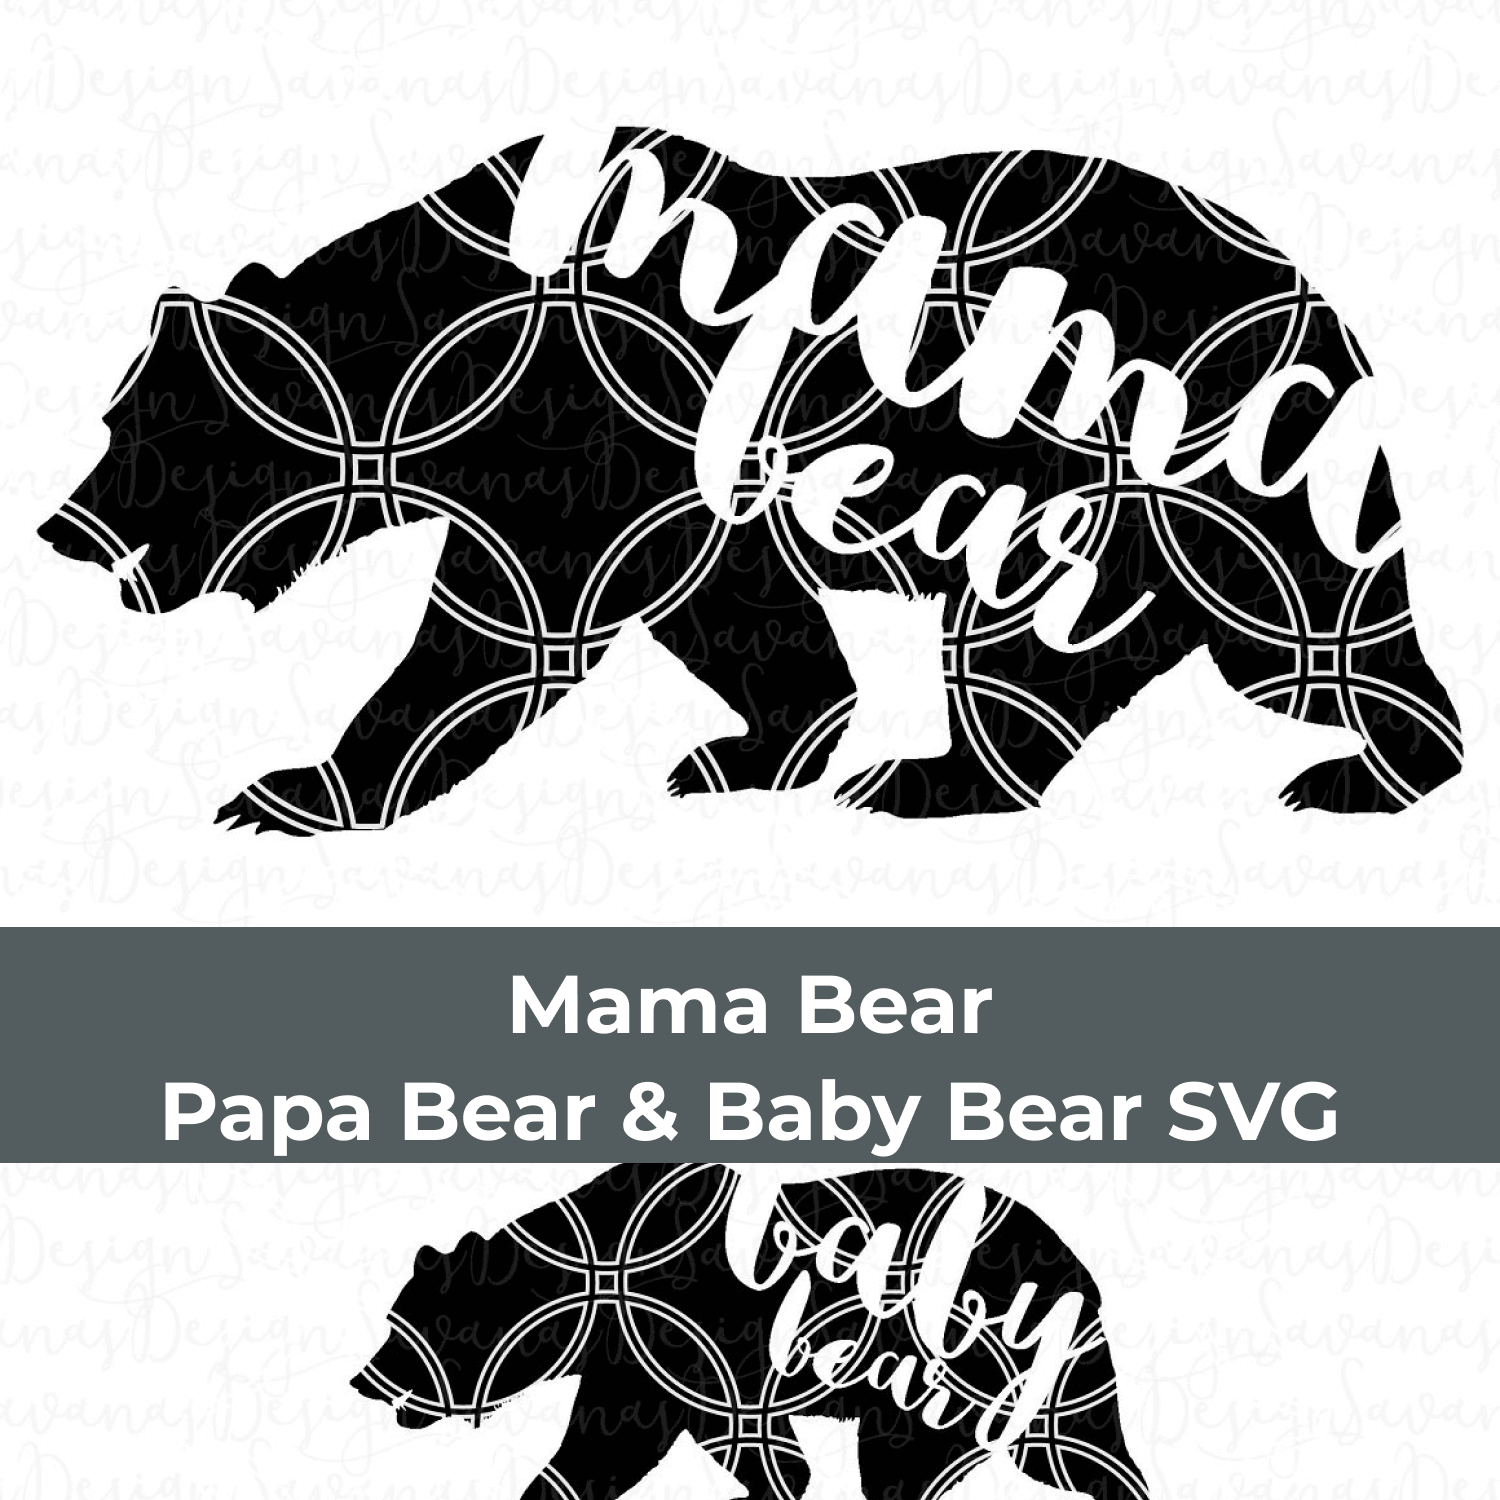 Mama bear and baby bear svg cut file.